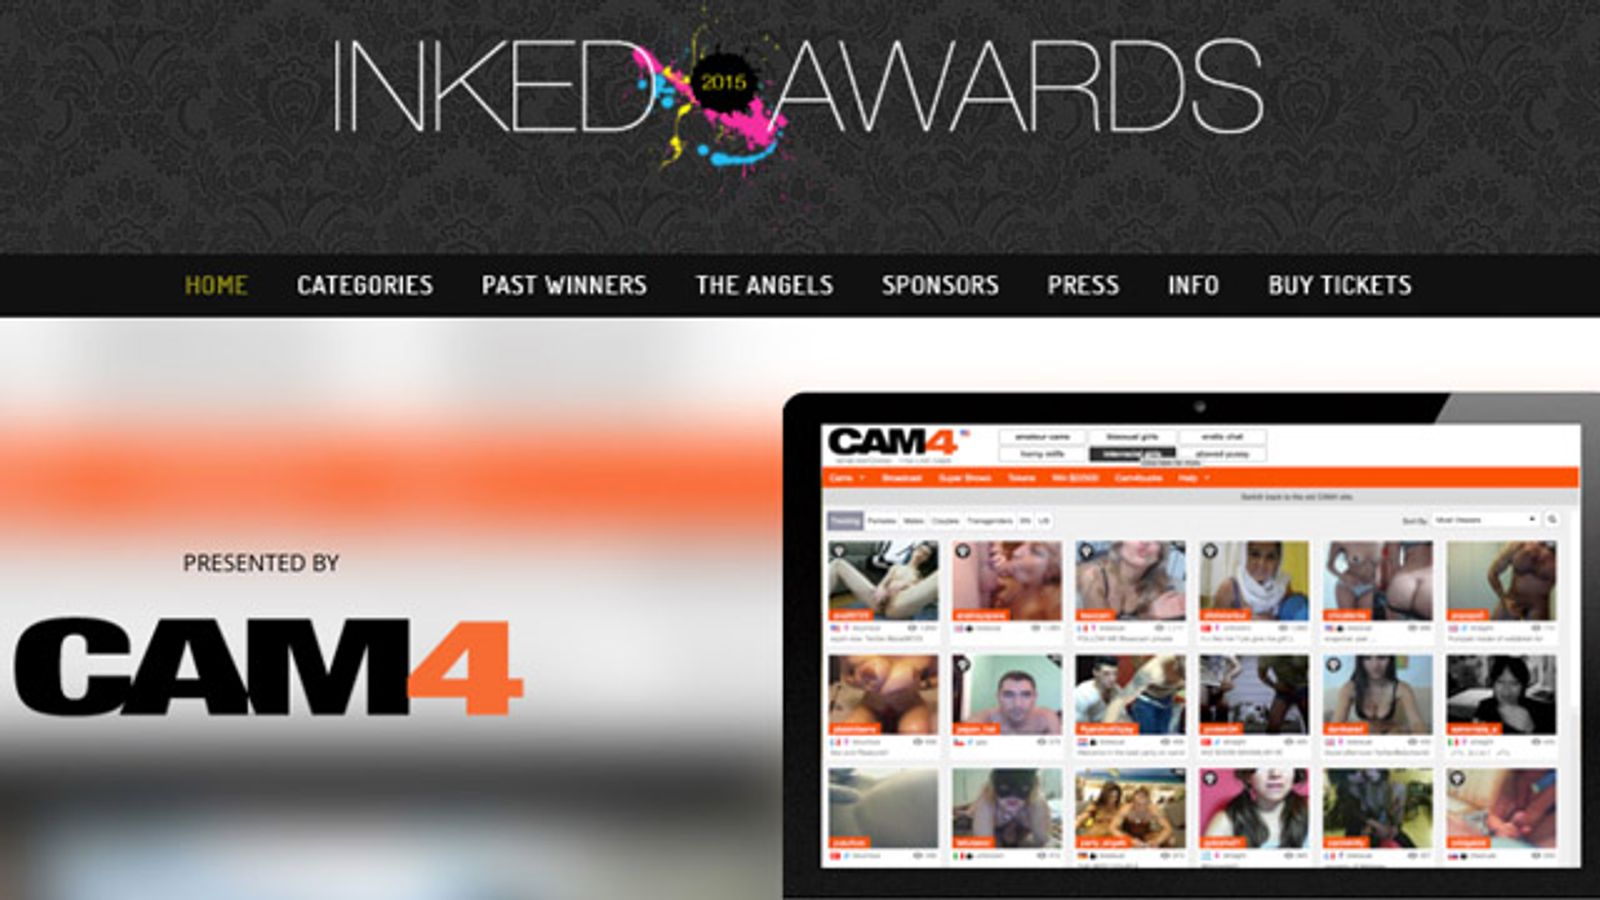 Cam4.com Named Gold Sponsor for 2015 Inked Awards